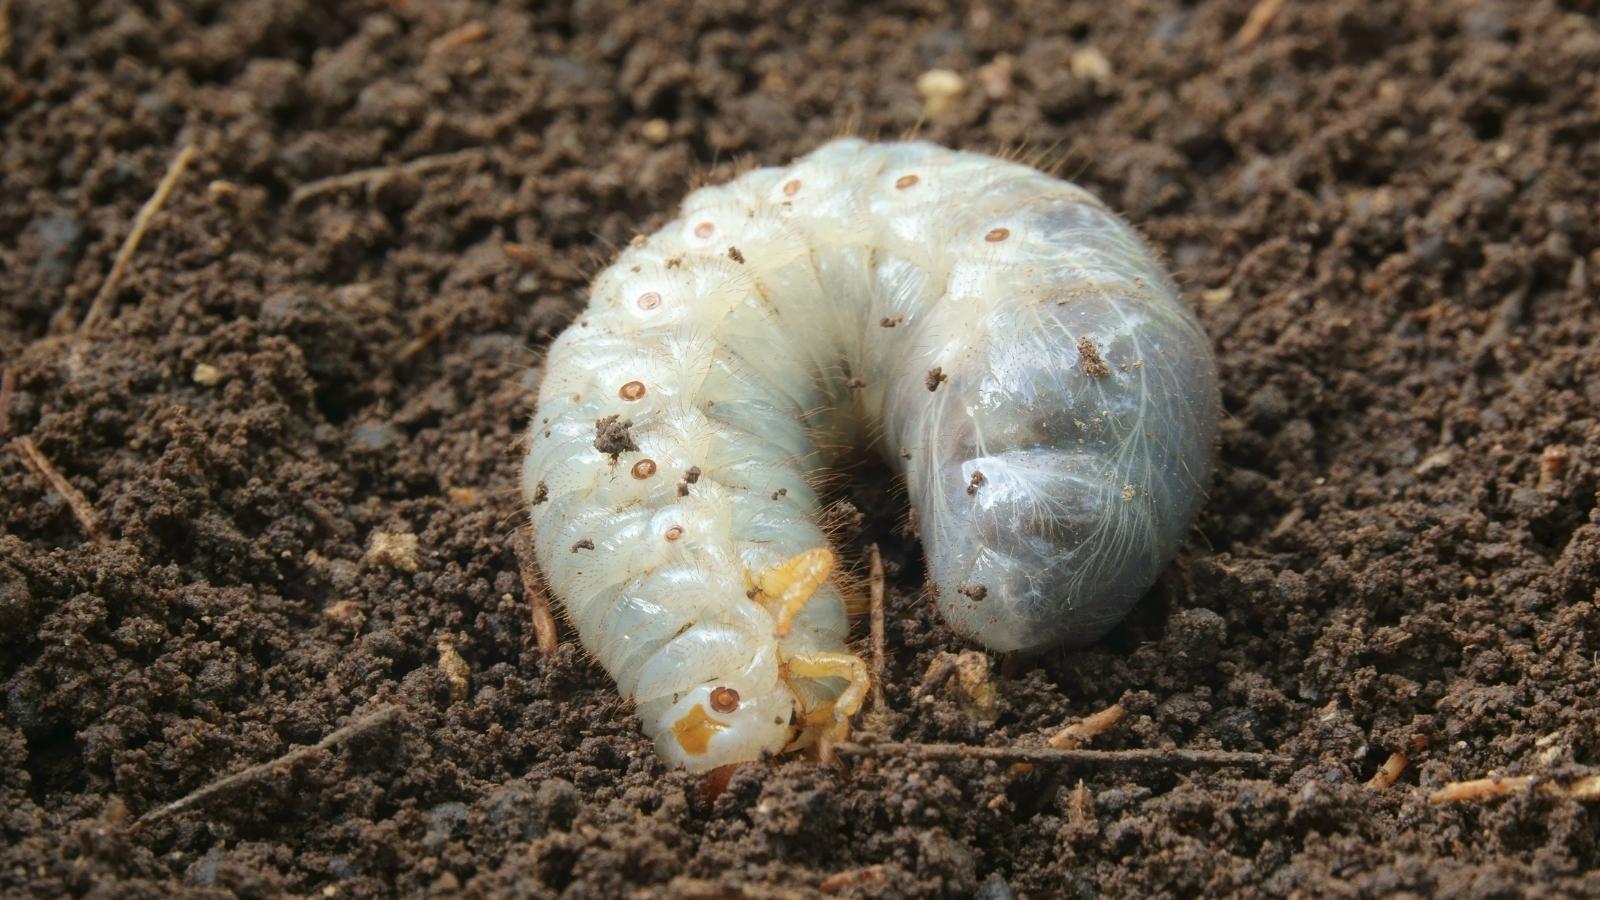 White worms